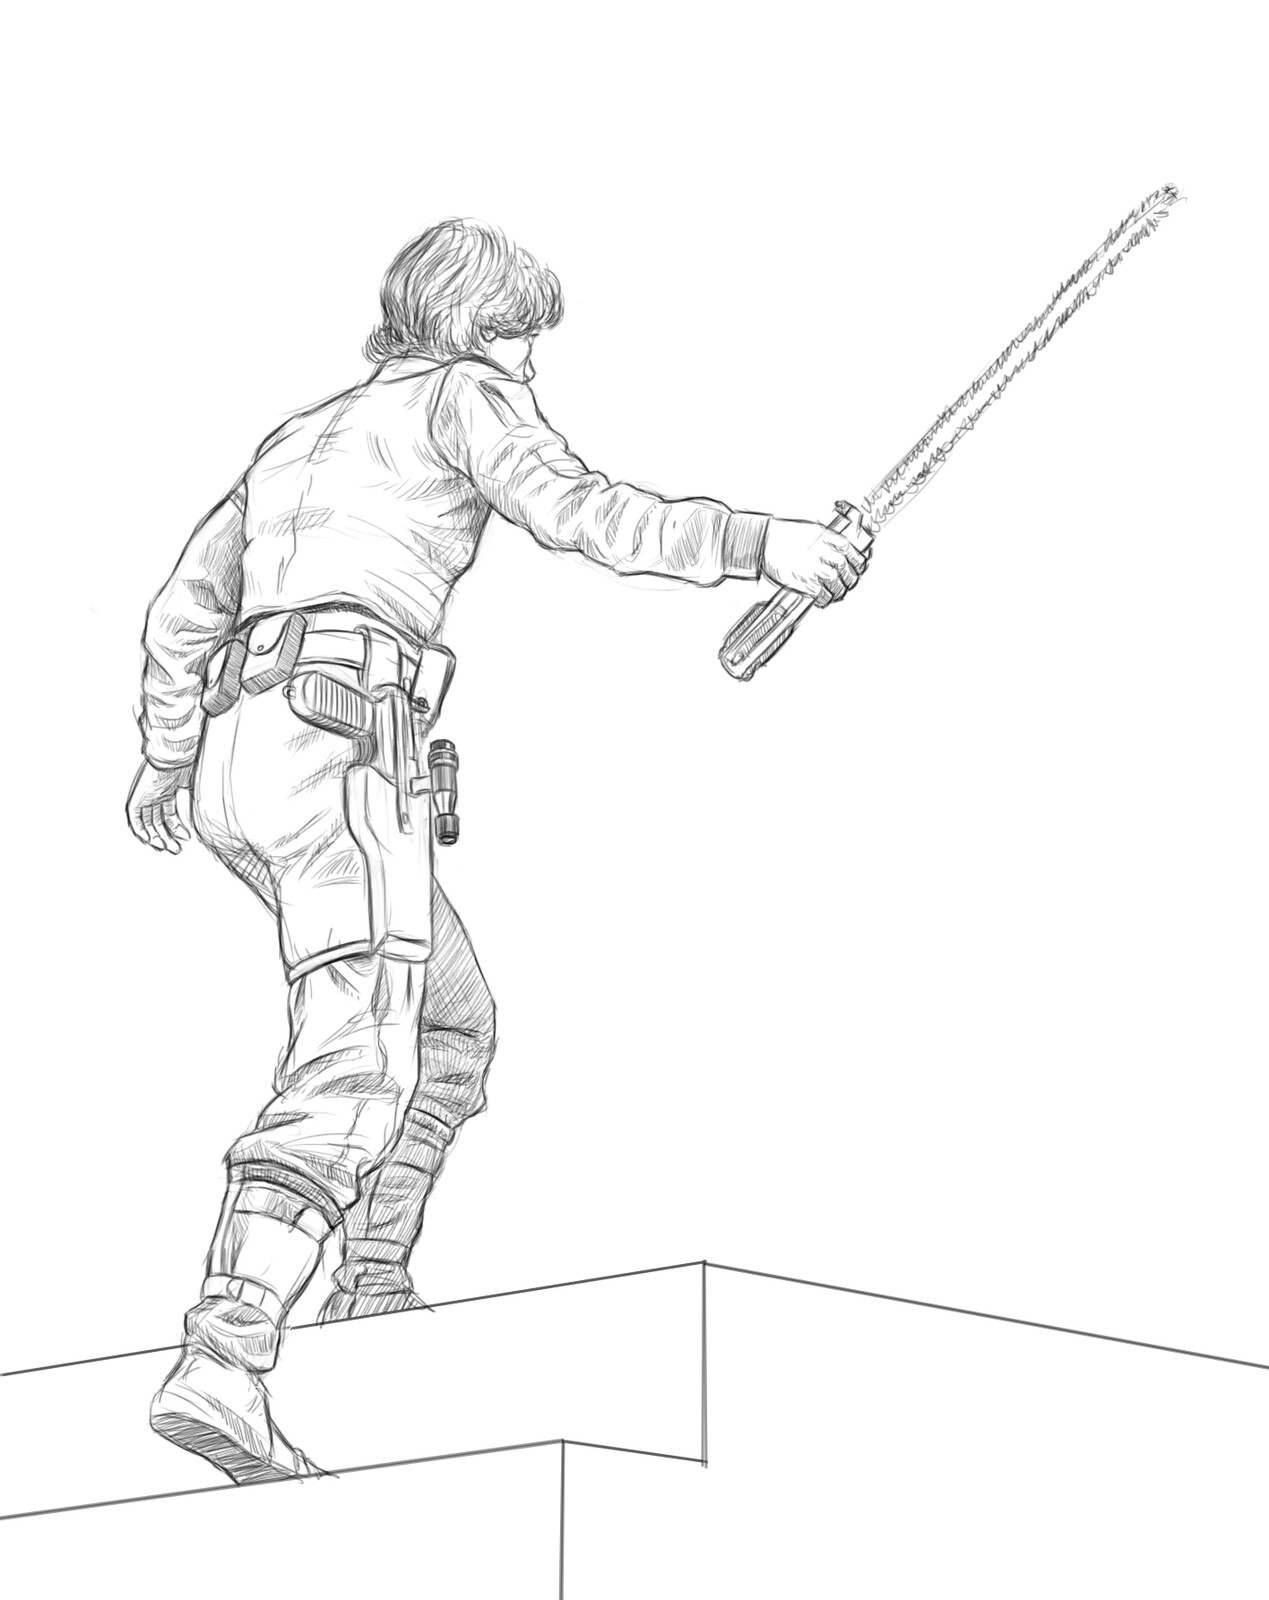 Alientrekwars: Luke Character Sketch